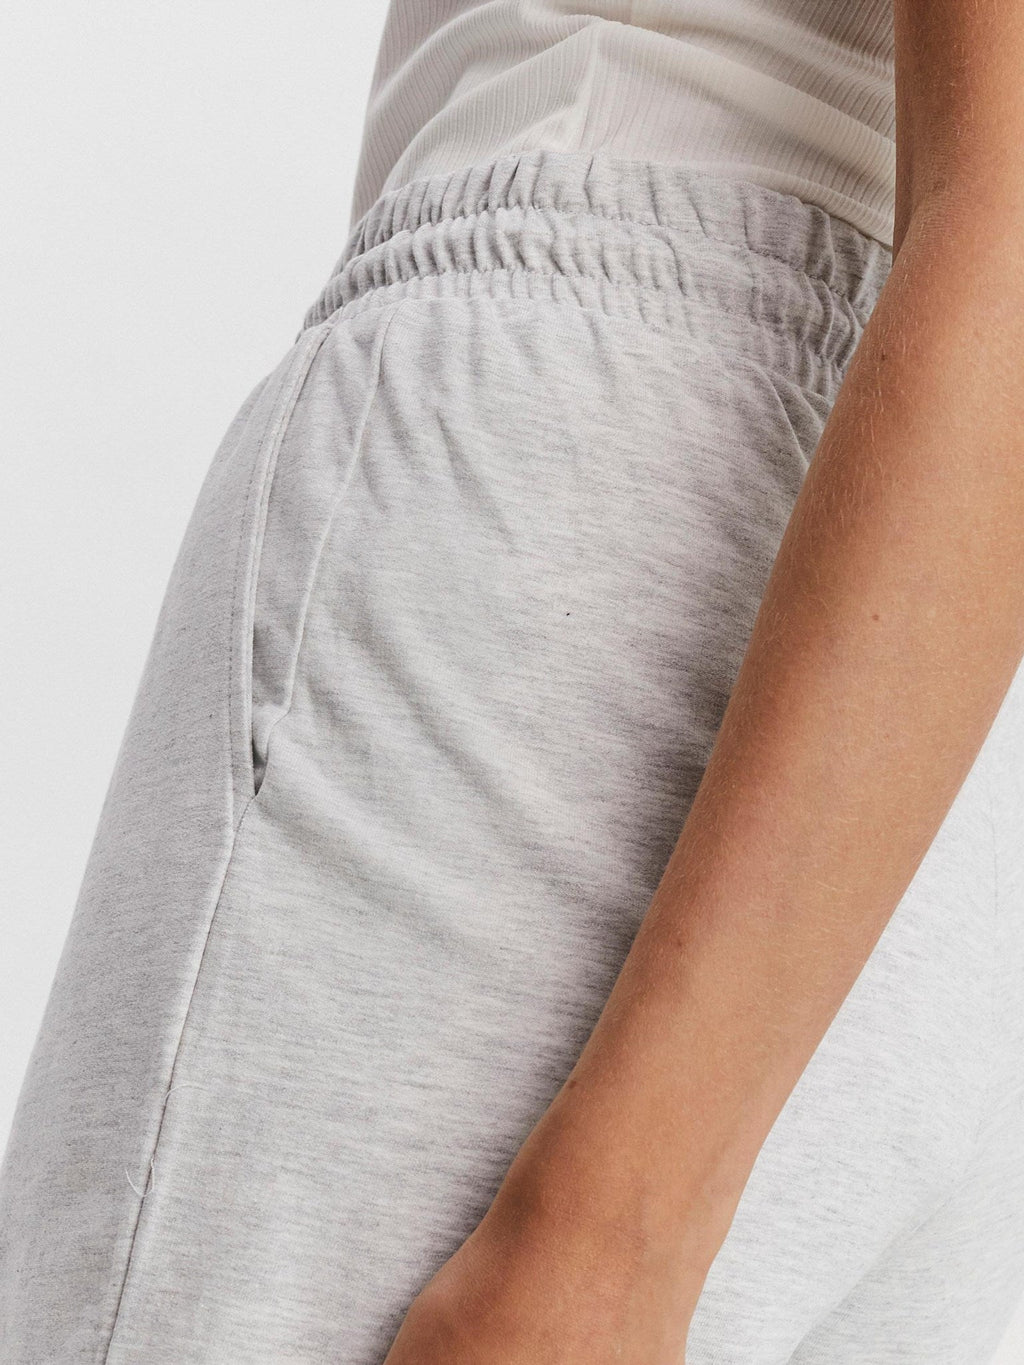 Octavia Sweat Shorts - Light gray